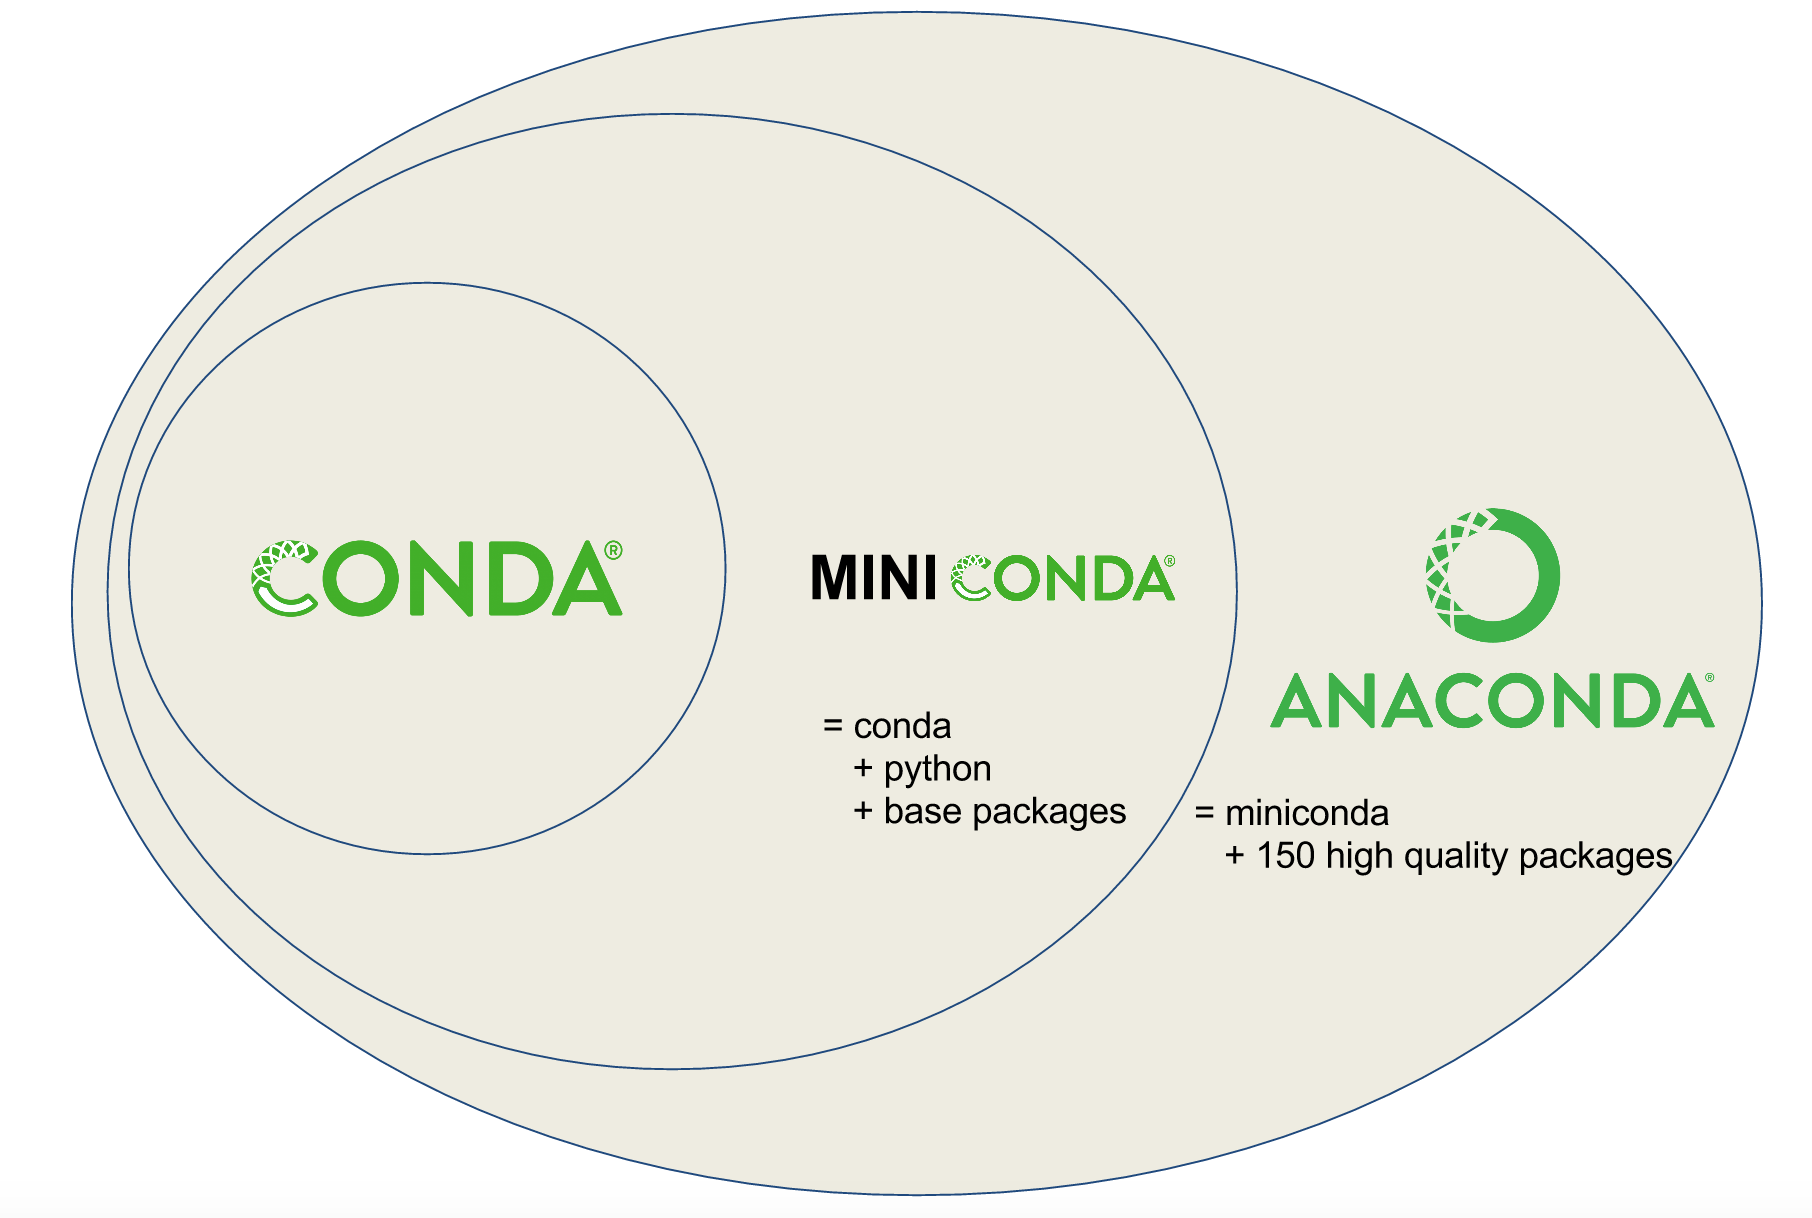 Conda vs. Miniconda vs. Anaconda